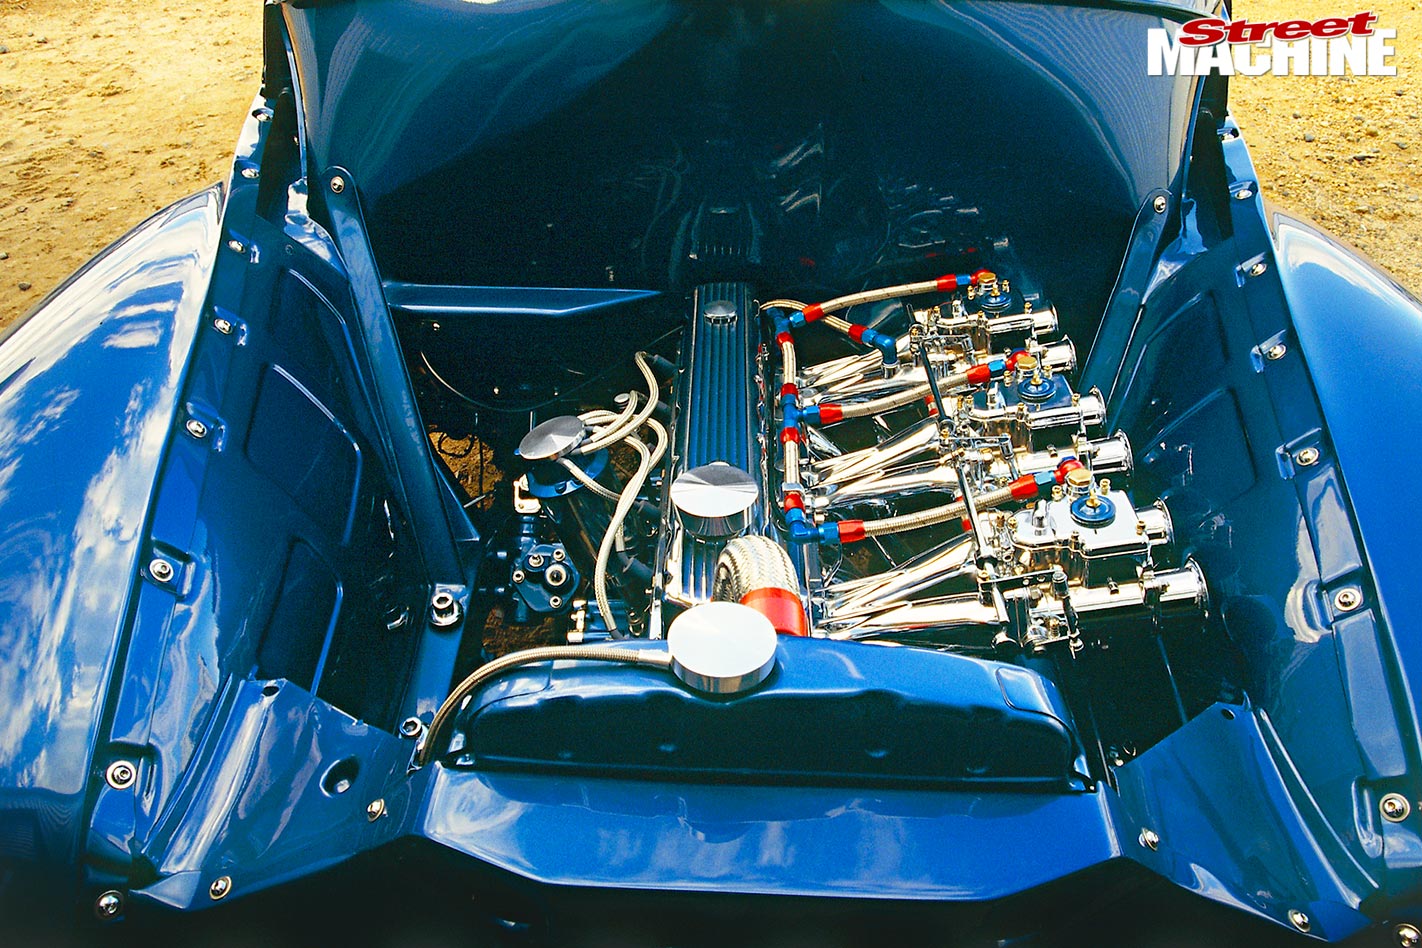 Rex Webster's iconic FJ Holden